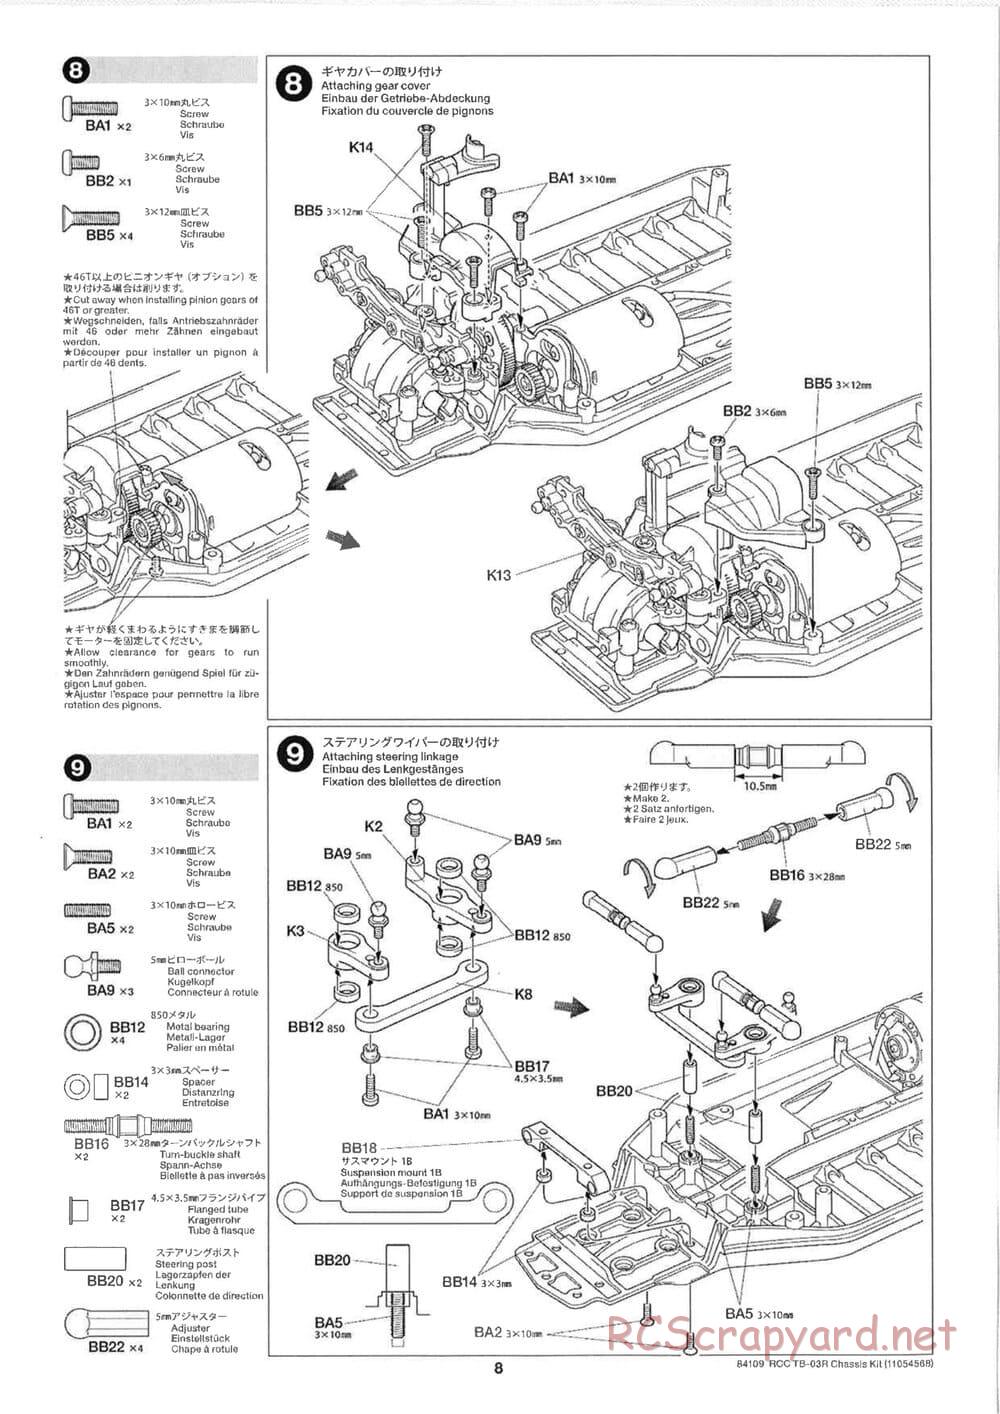 Tamiya - TB-03R Chassis - Manual - Page 8